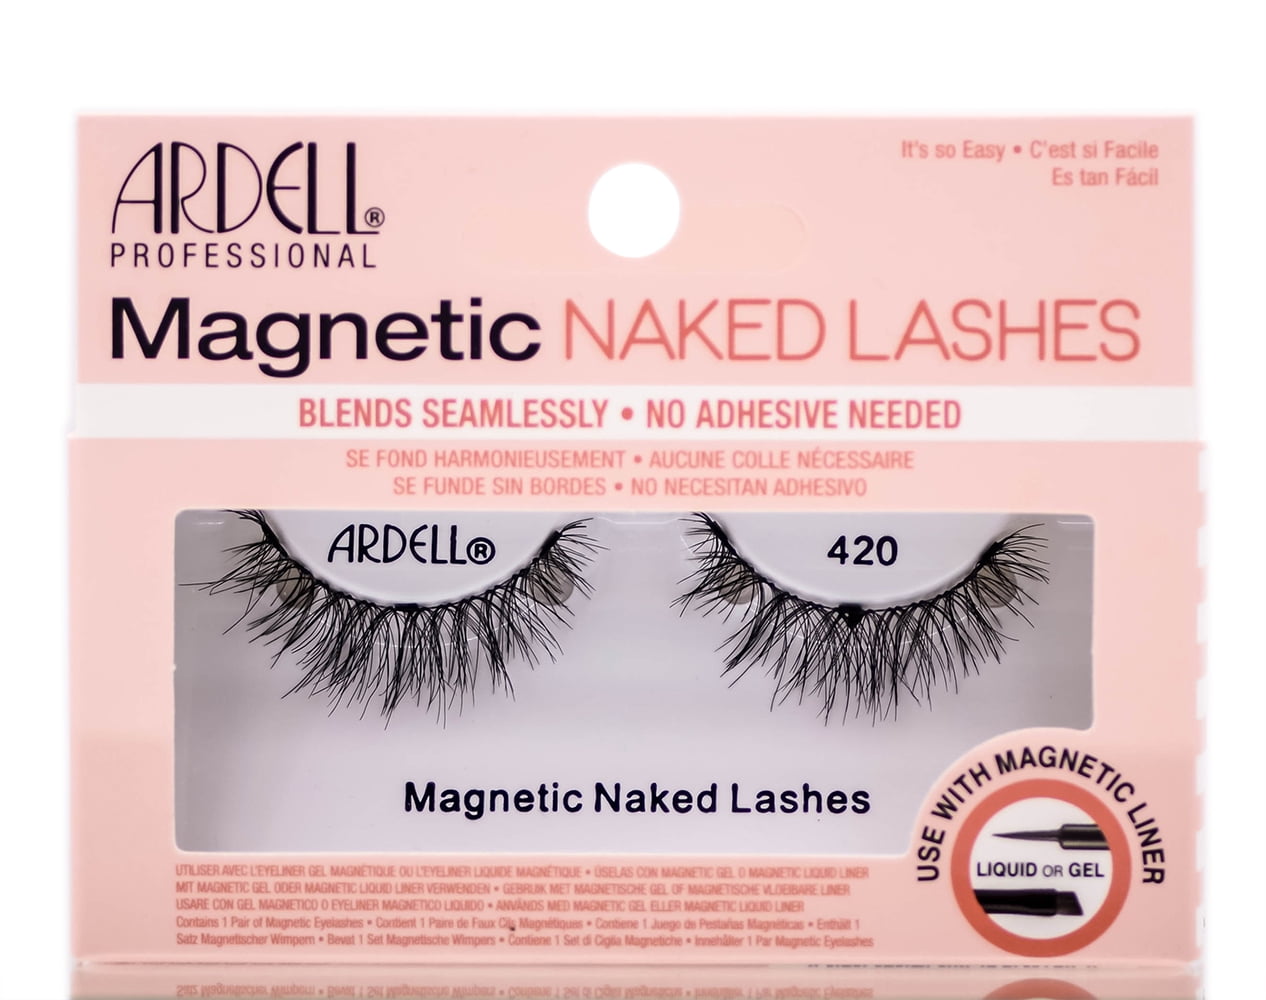 via Fristelse hø Ardell Professional Magnetic Naked Lashes - 420 - Walmart.com